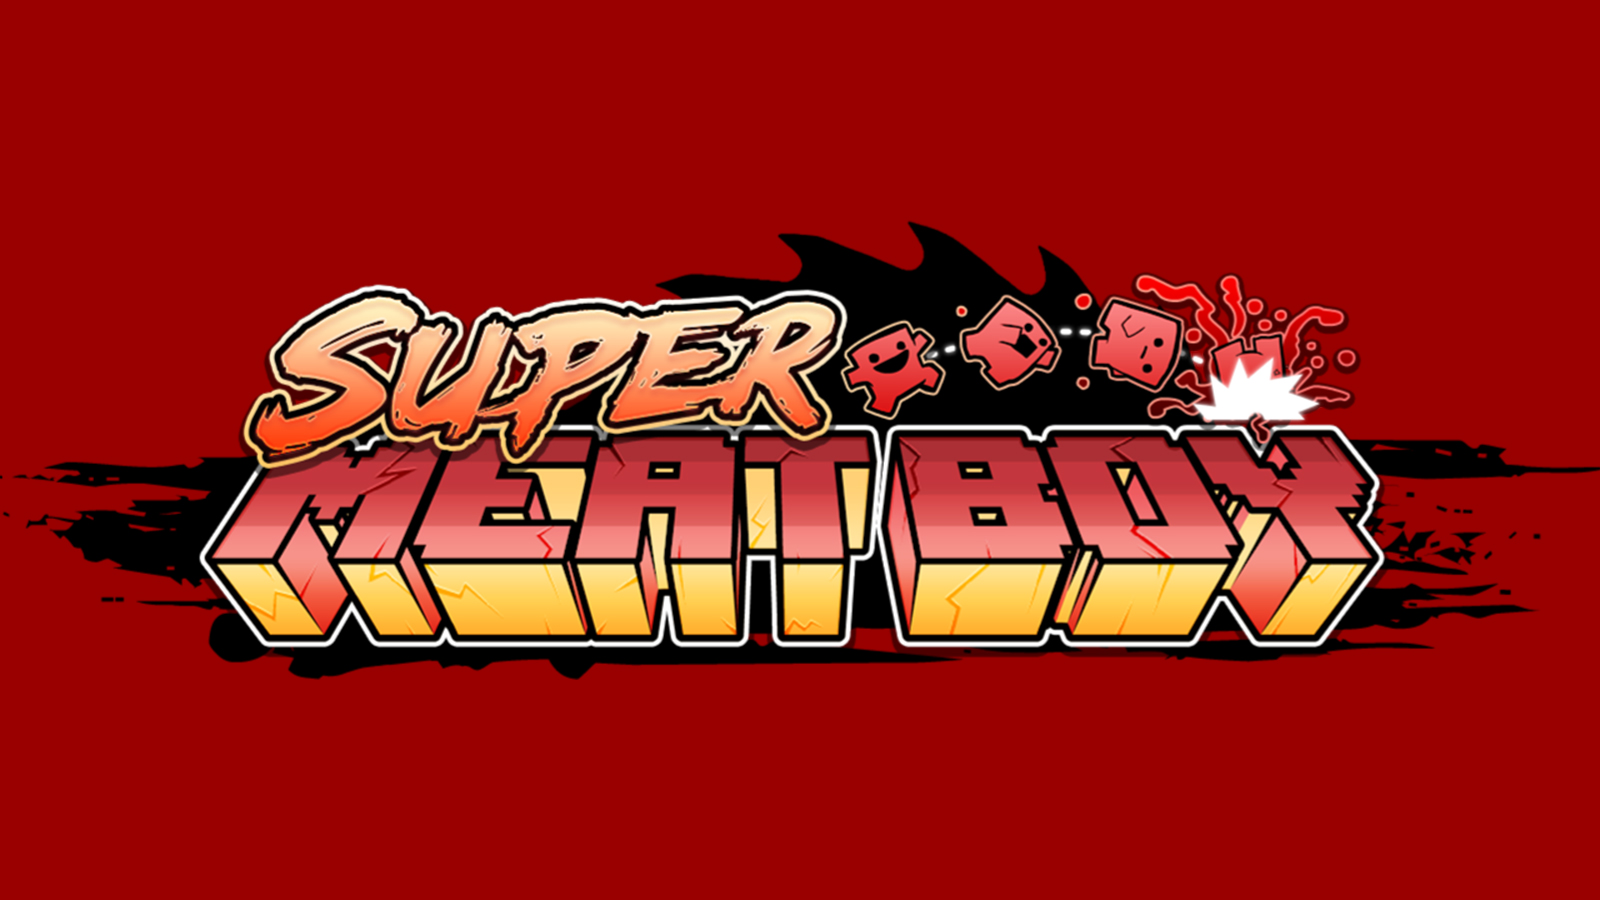 Super Meat Boy Backgrounds, Compatible - PC, Mobile, Gadgets| 1600x900 px